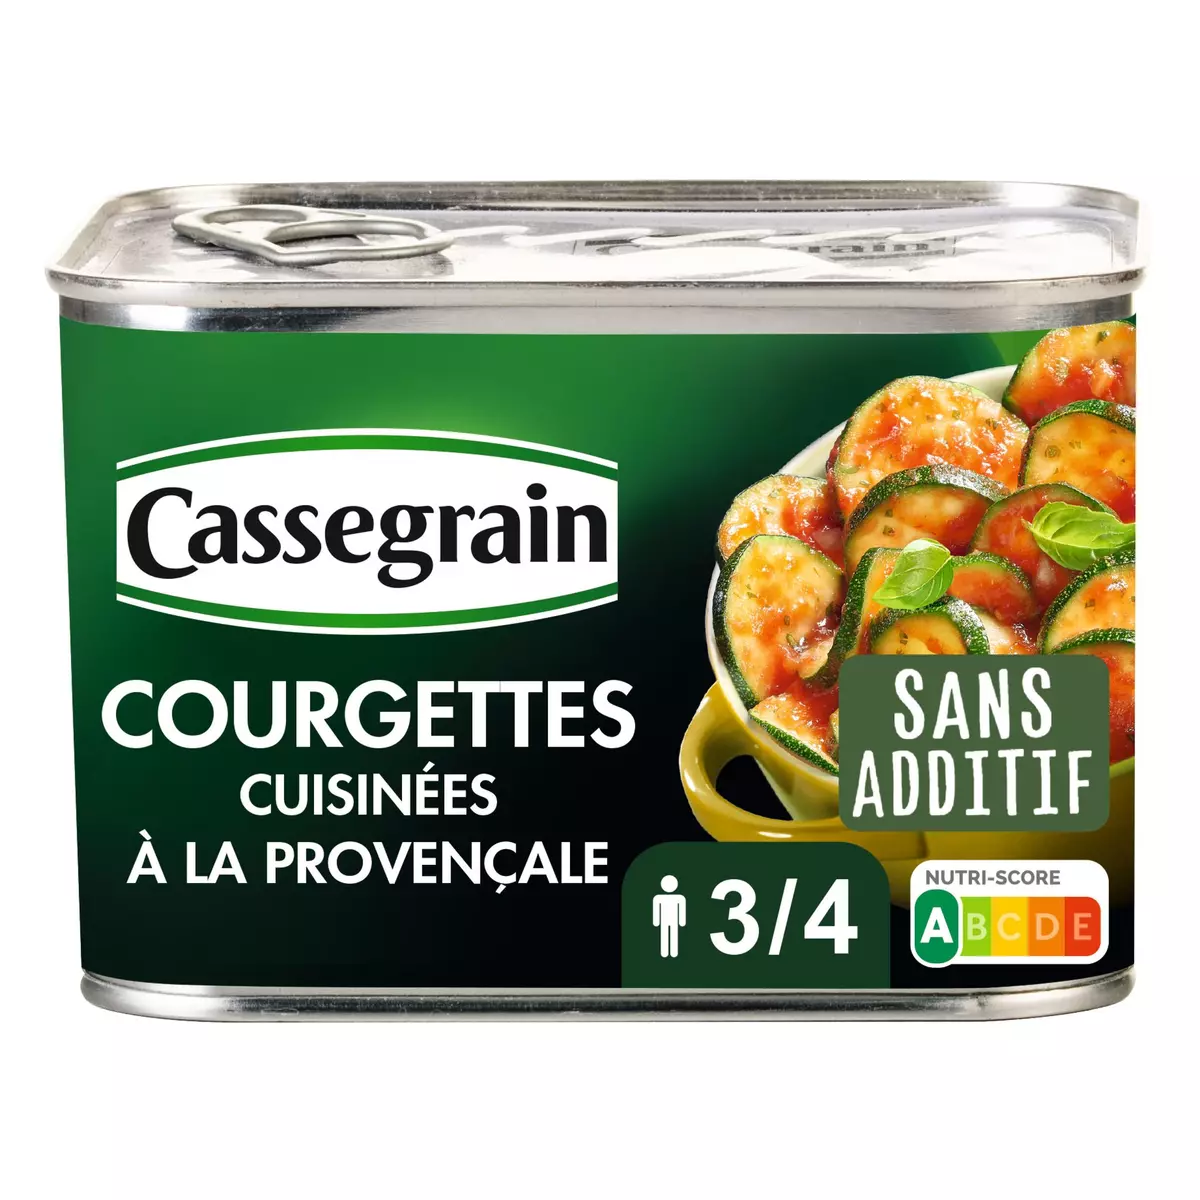 CASSEGRAIN Courgettes cuisinées à la provençale 3/4 portions 660g